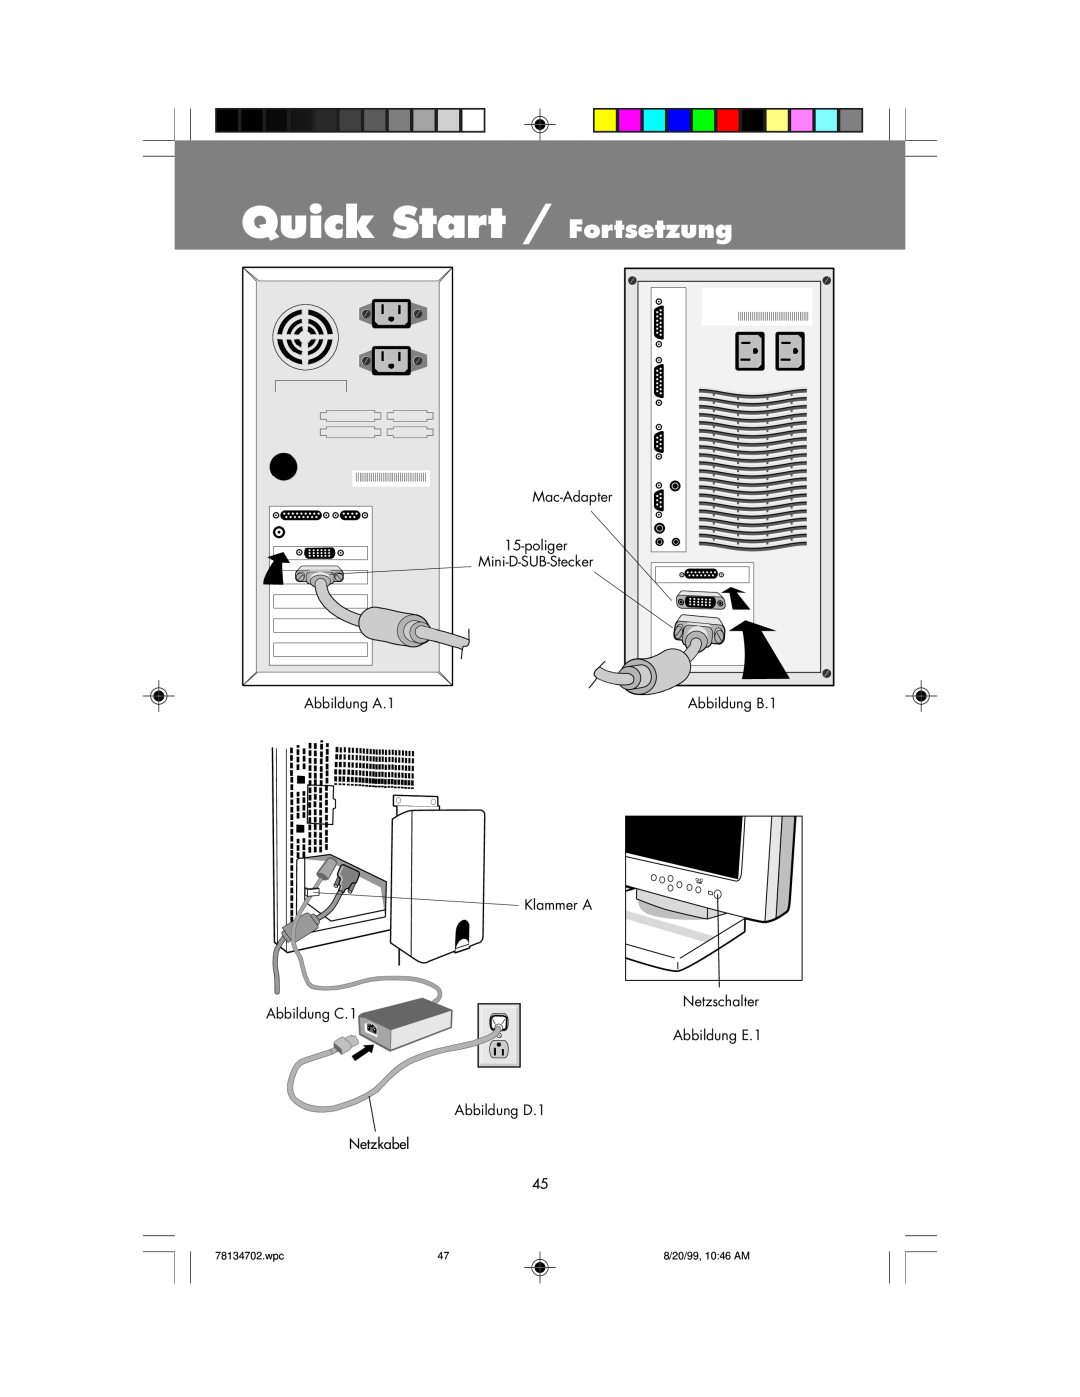 NEC LCD1510+ user manual Quick Start / Fortsetzung, Mac-Adapter 15-poliger Mini-D-SUB-Stecker, Abbildung A.1, Abbildung B.1 